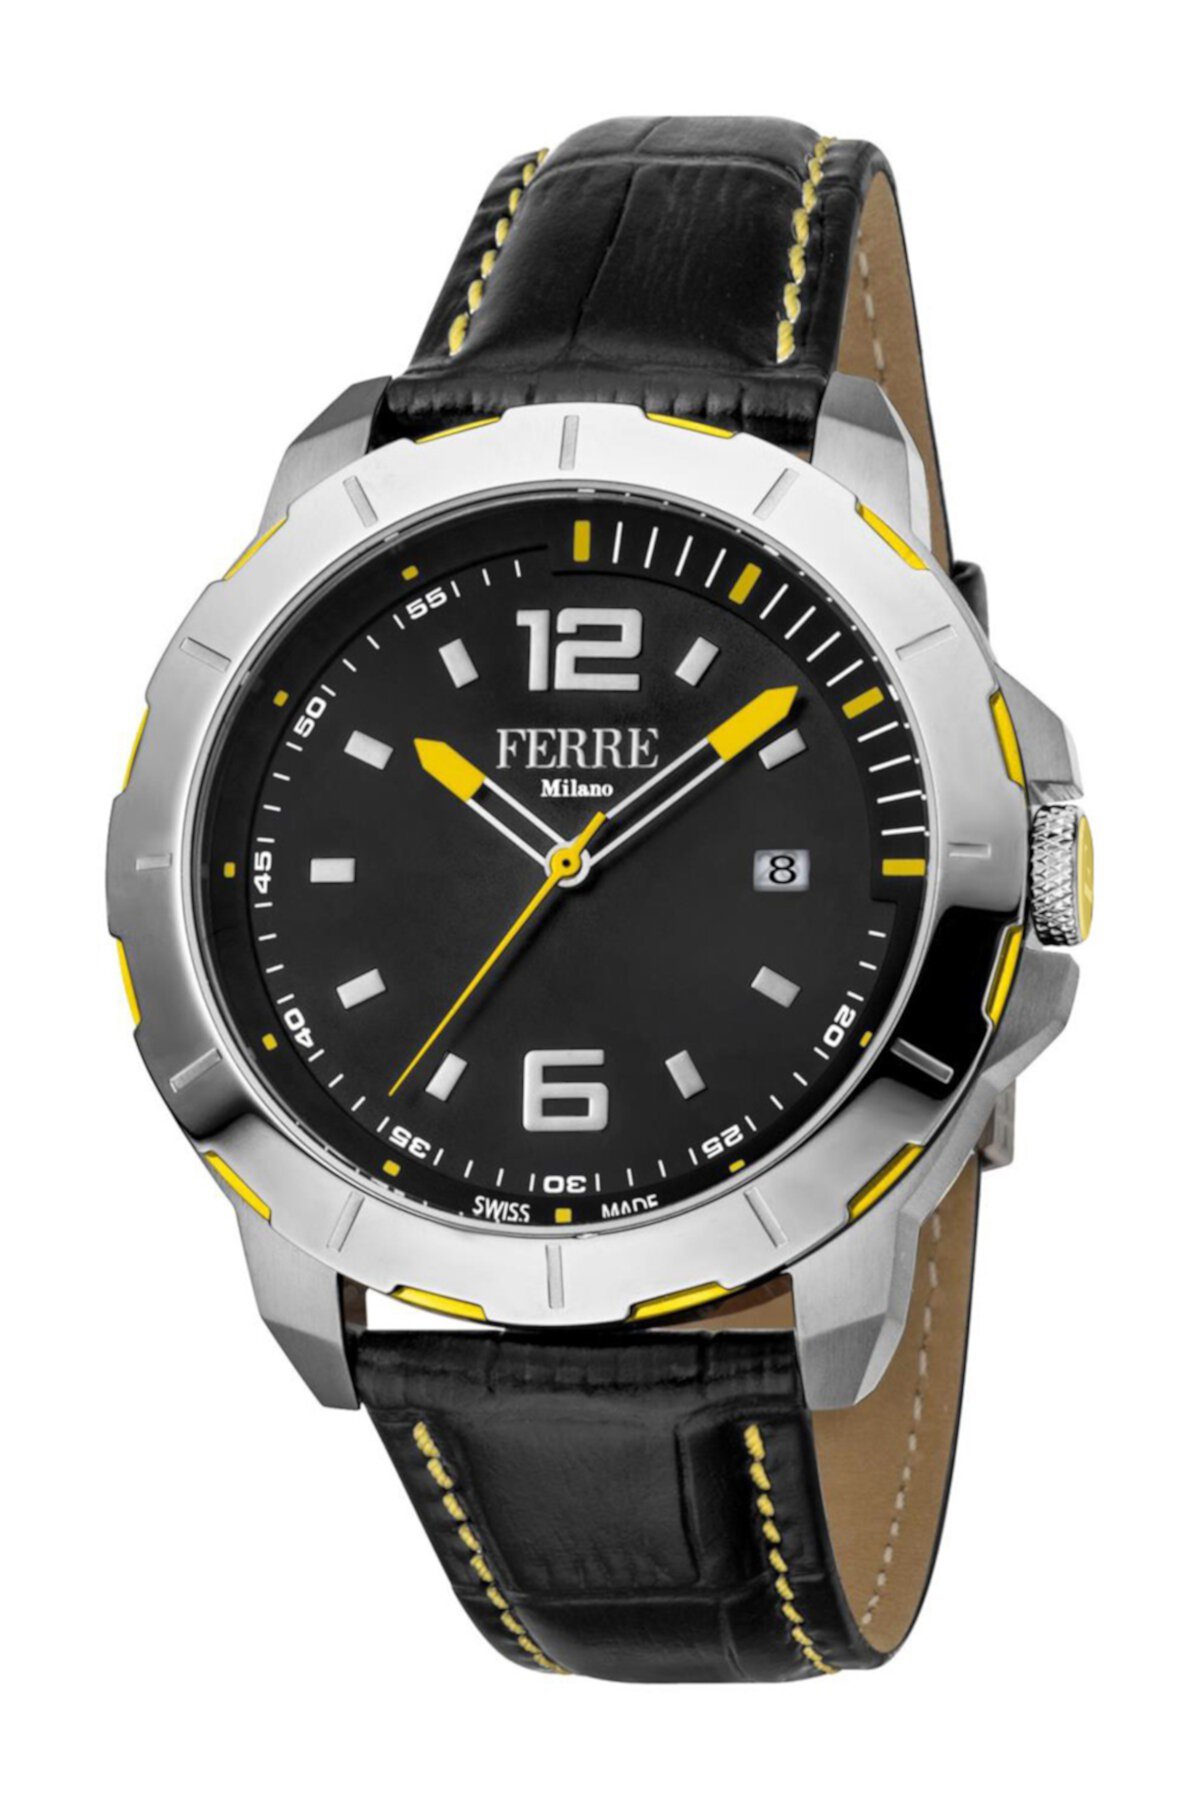 Мужские часы Uomo Capri швейцарские кварцевые с кожаным ремешком с тиснением под крокодила, 45 мм Ferre Milano